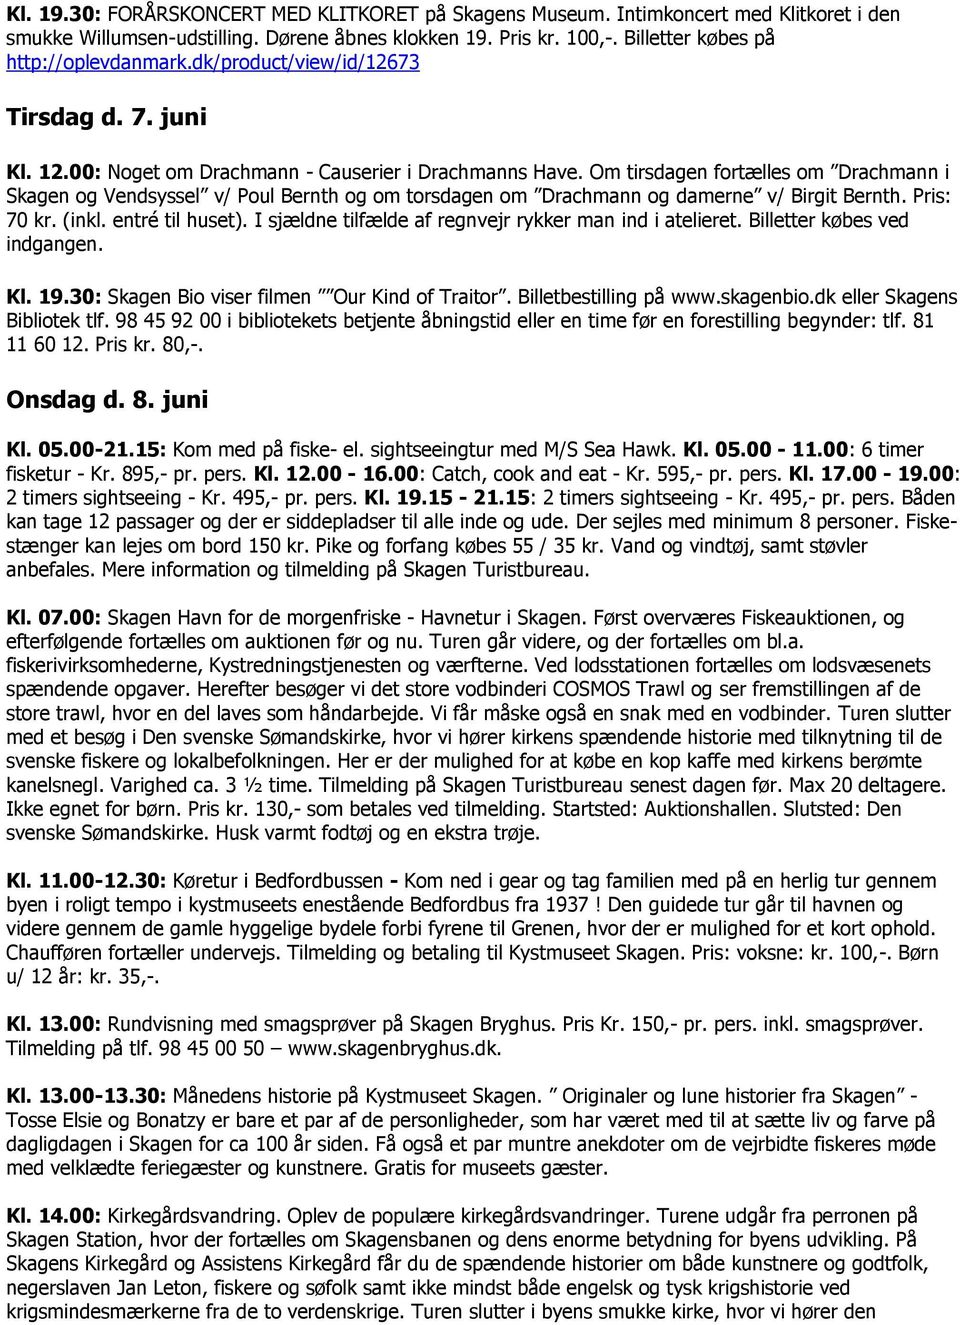 Om tirsdagen fortælles om Drachmann i Skagen og Vendsyssel v/ Poul Bernth og om torsdagen om Drachmann og damerne v/ Birgit Bernth. Pris: 70 kr. (inkl. entré til huset).